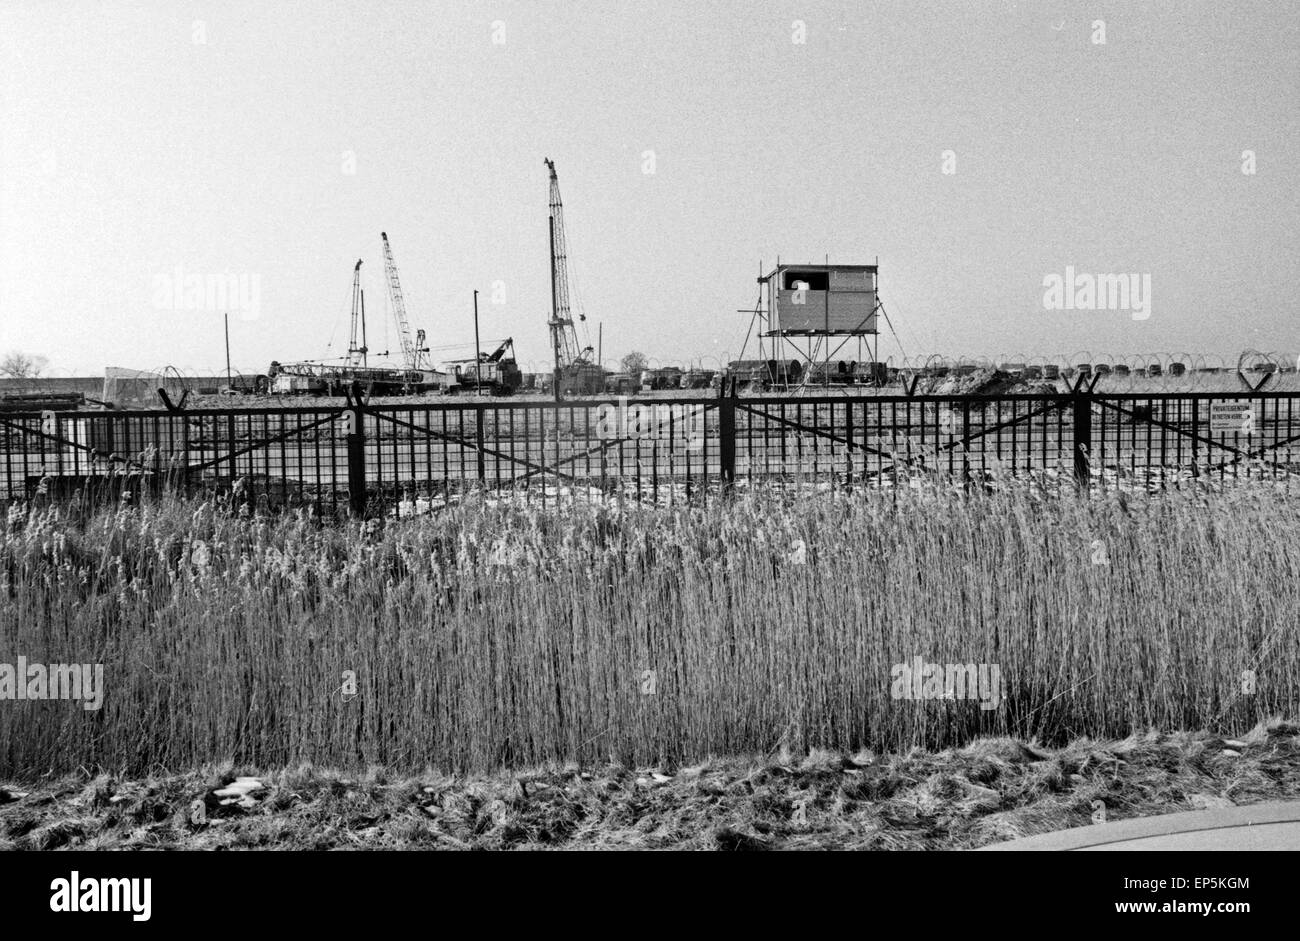 Polizeieinsatzwagen sichern die Baumaschinen hinter dem Zaun des Kernkraftwerks in Brokdorf, Deutschland 1980er Jahre. La polizia tr Foto Stock